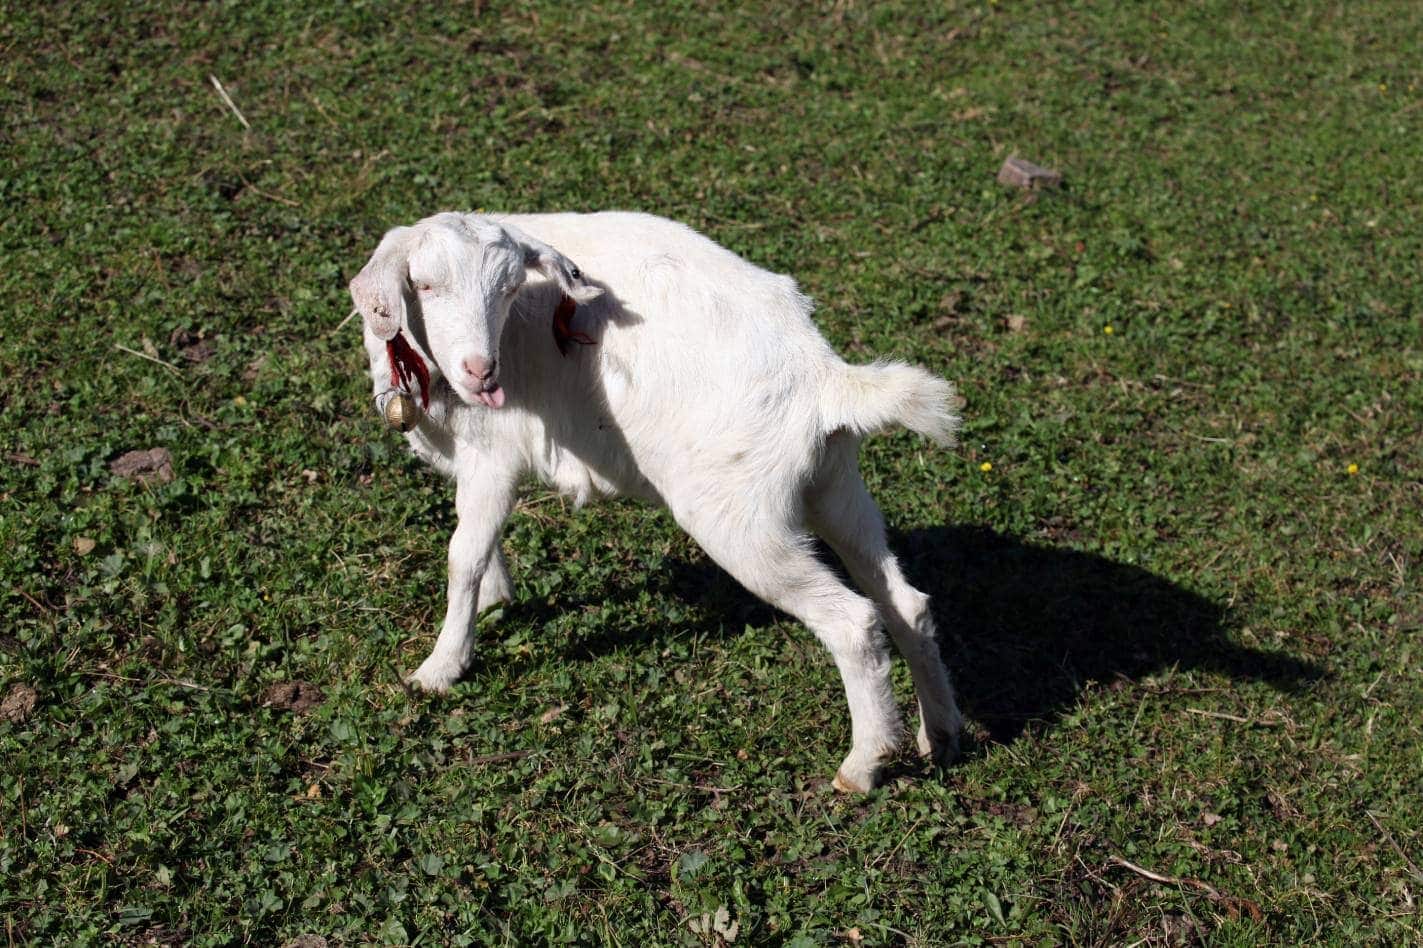 Xinjiang Goat